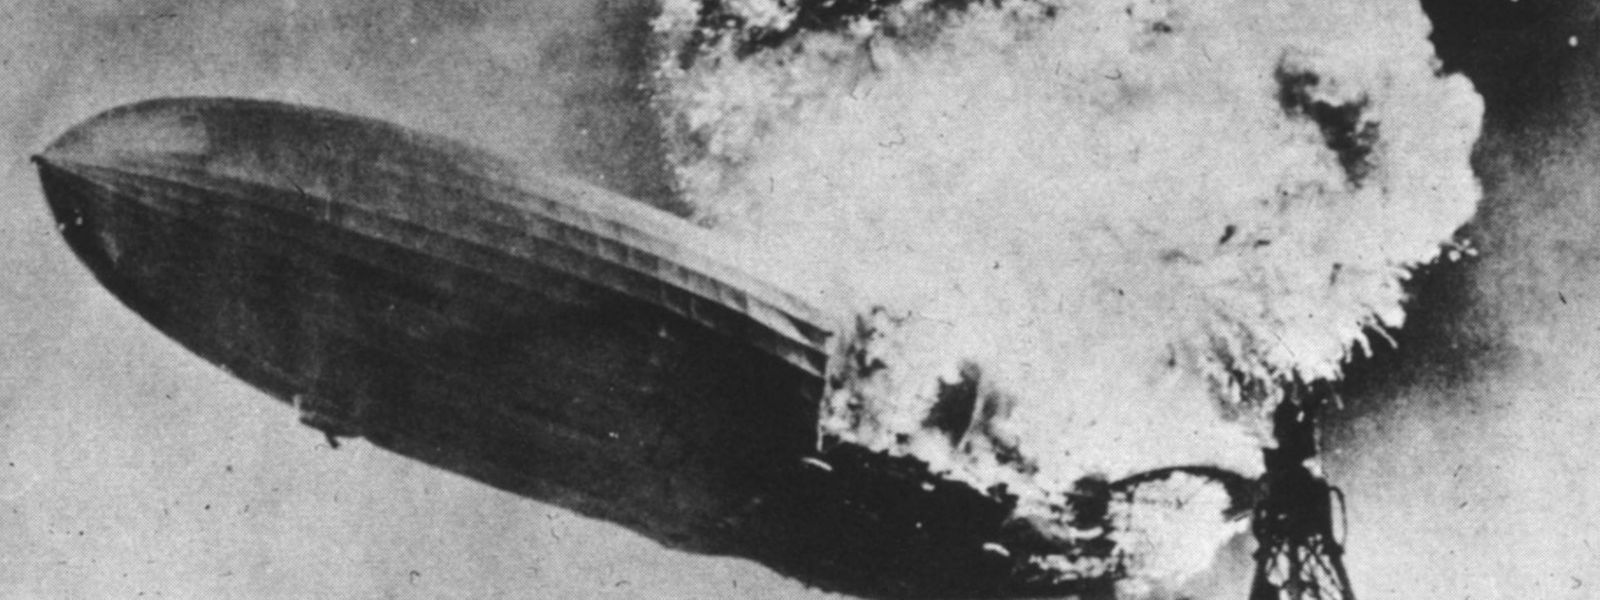 Nur ein gutes Jahr nach ihrem ersten Flug explodierte die "Hindenburg" mit einem gewaltigen Feuerball.